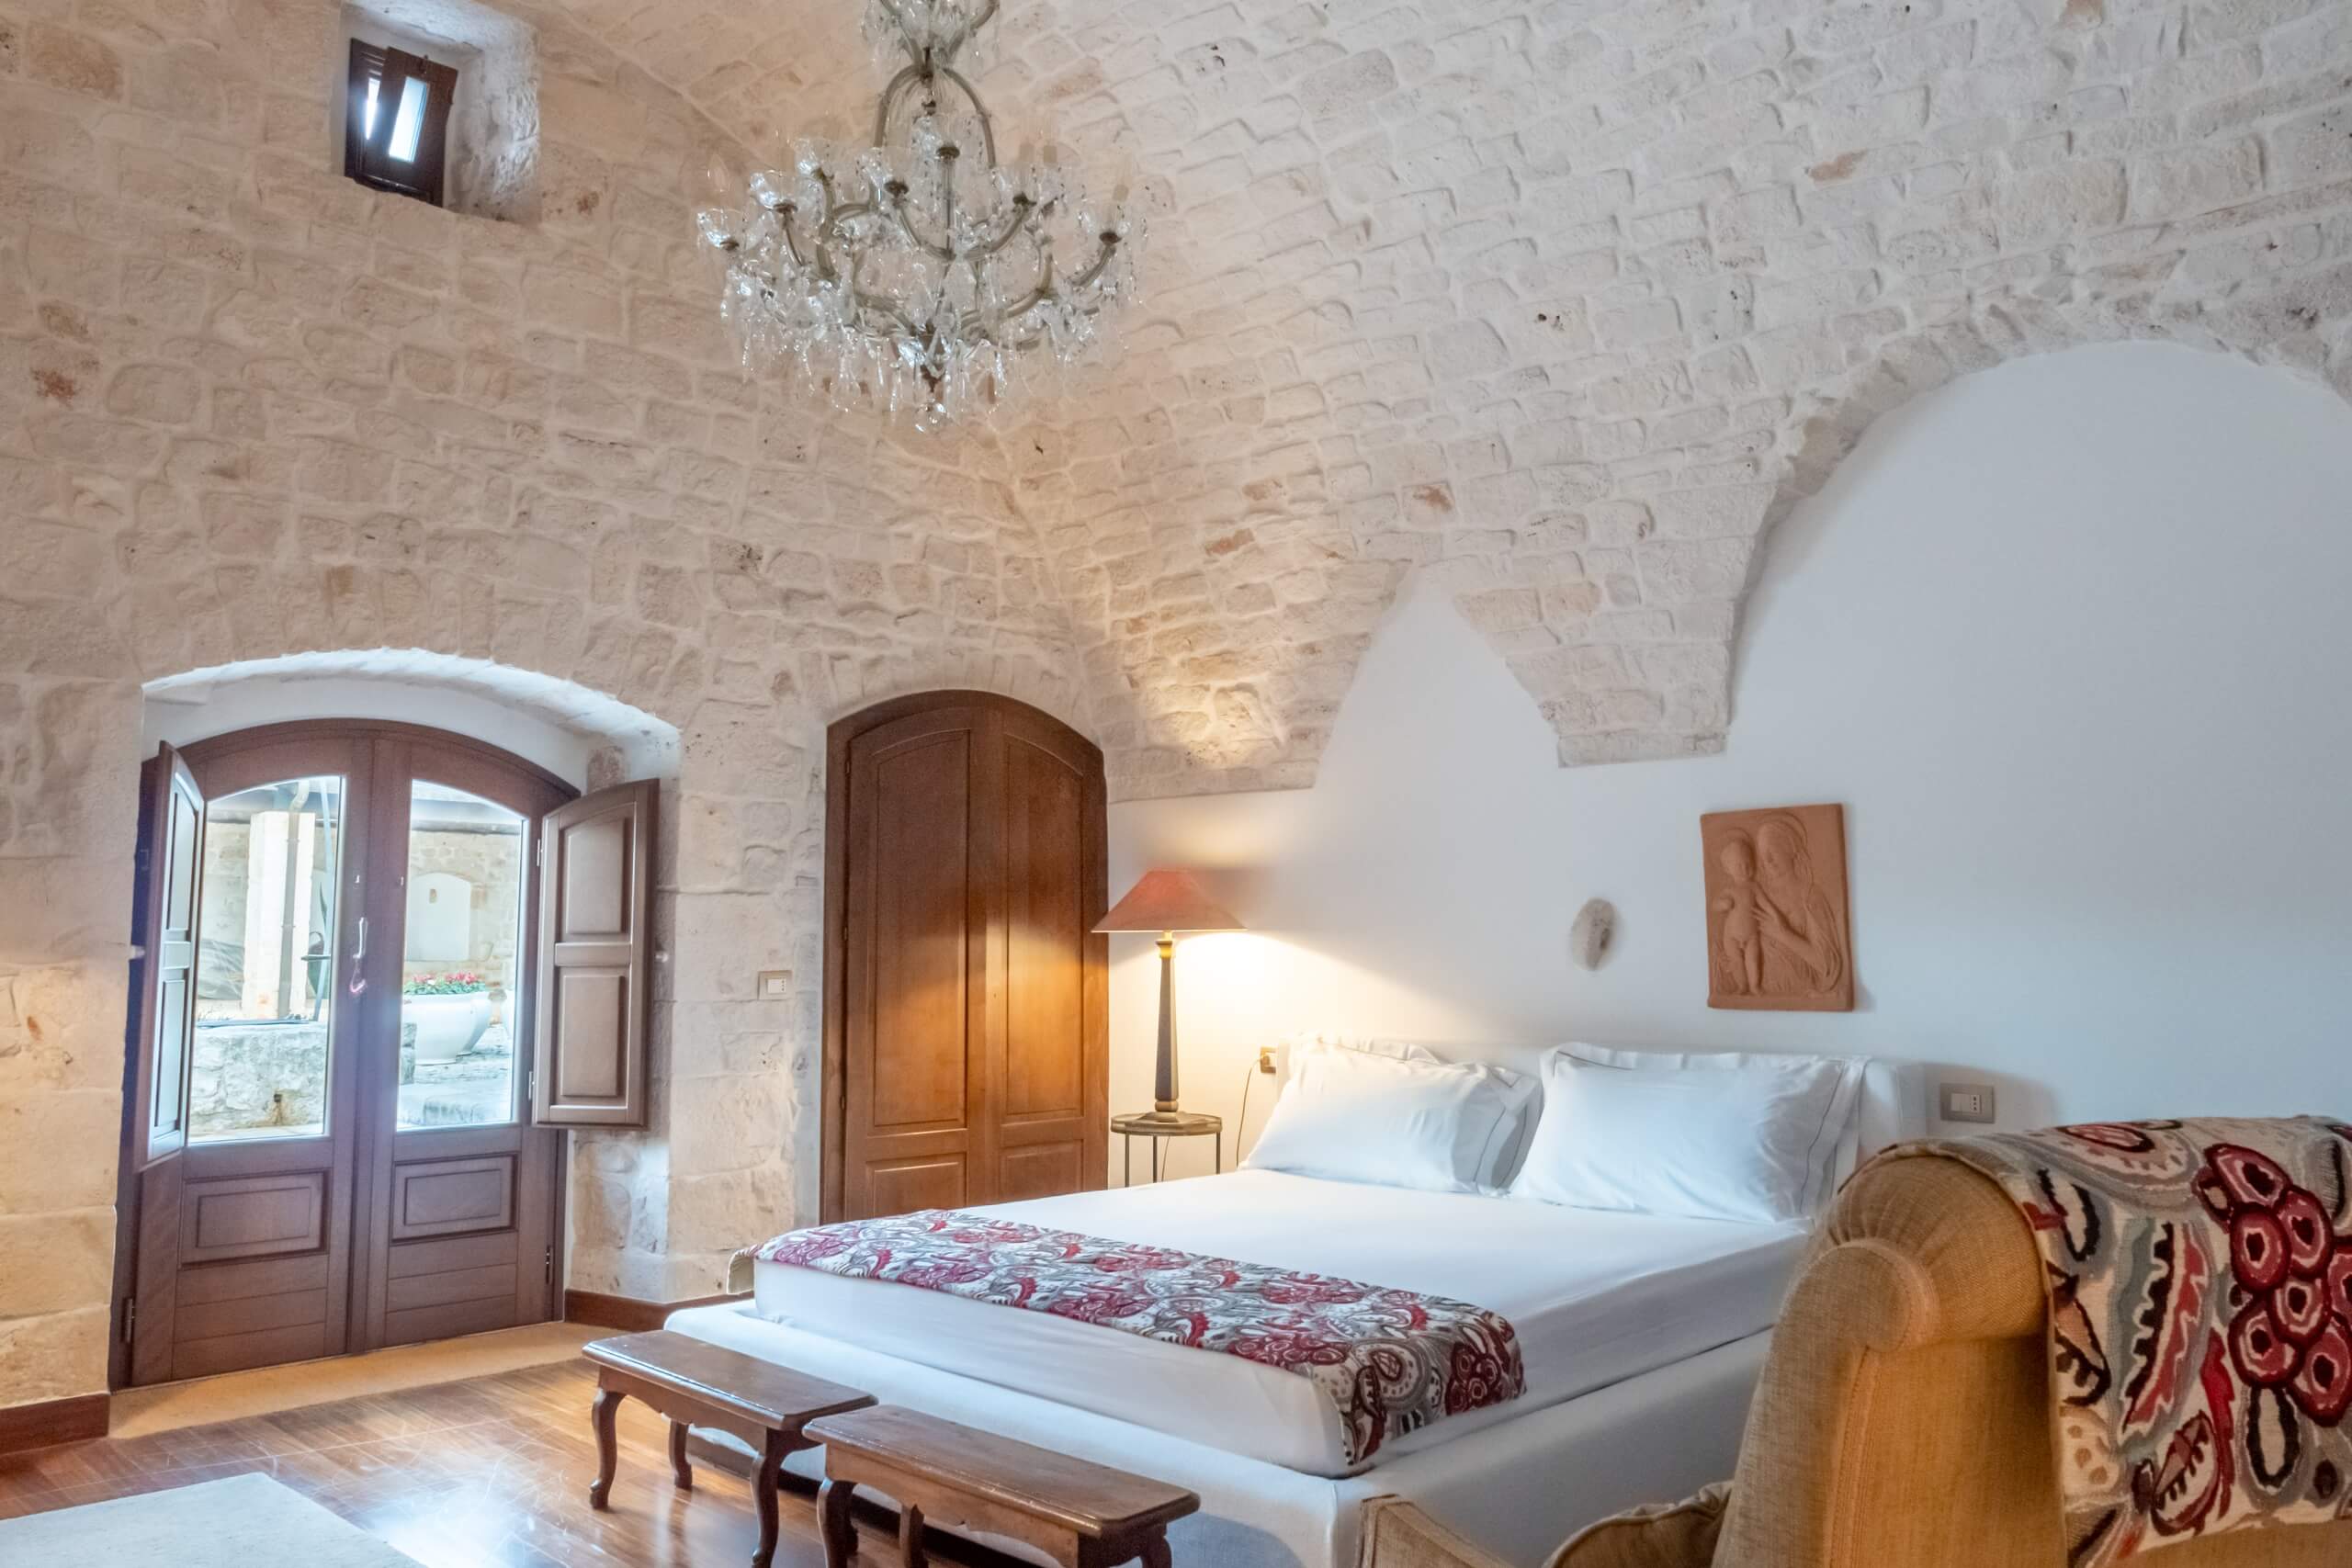 Camera matrimoniale con accesso al giardino in antica masseria pugliese | Masseria della Croce